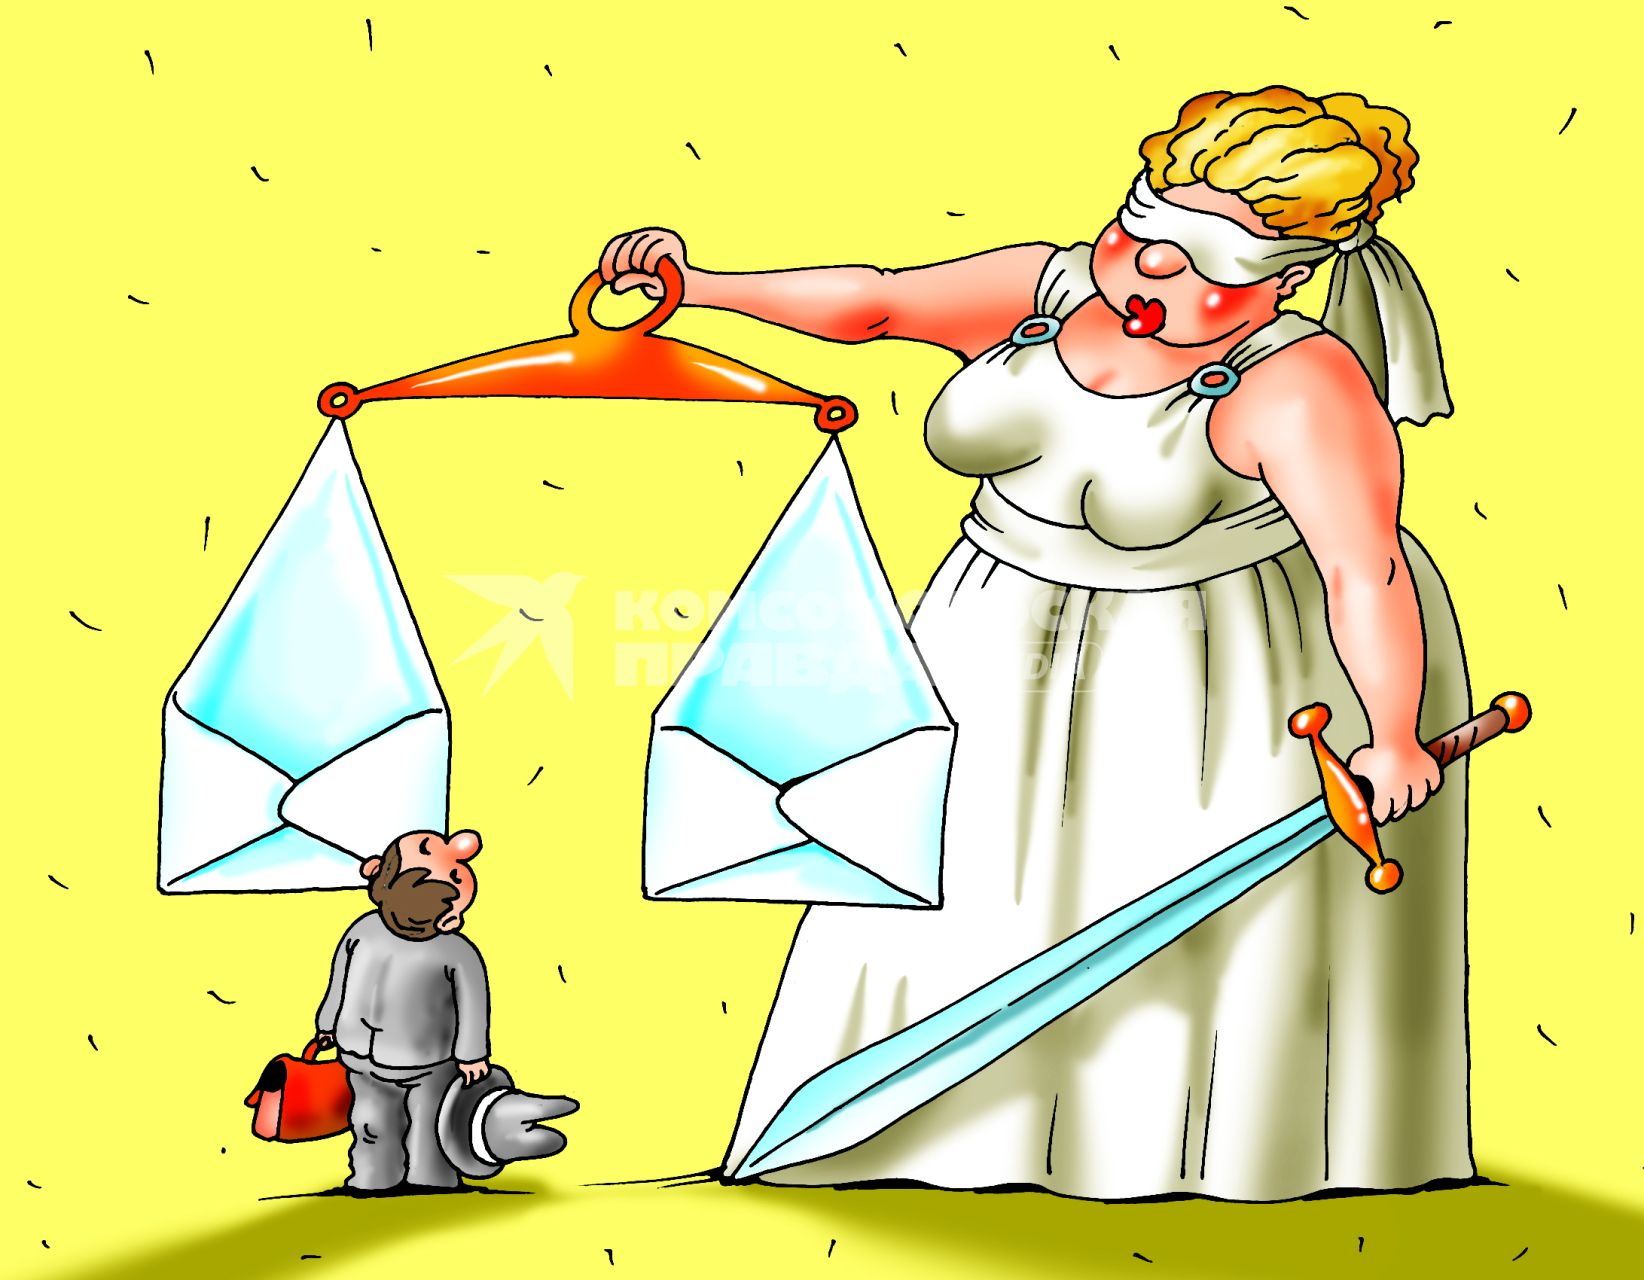 Карикатура на тему коррупции.